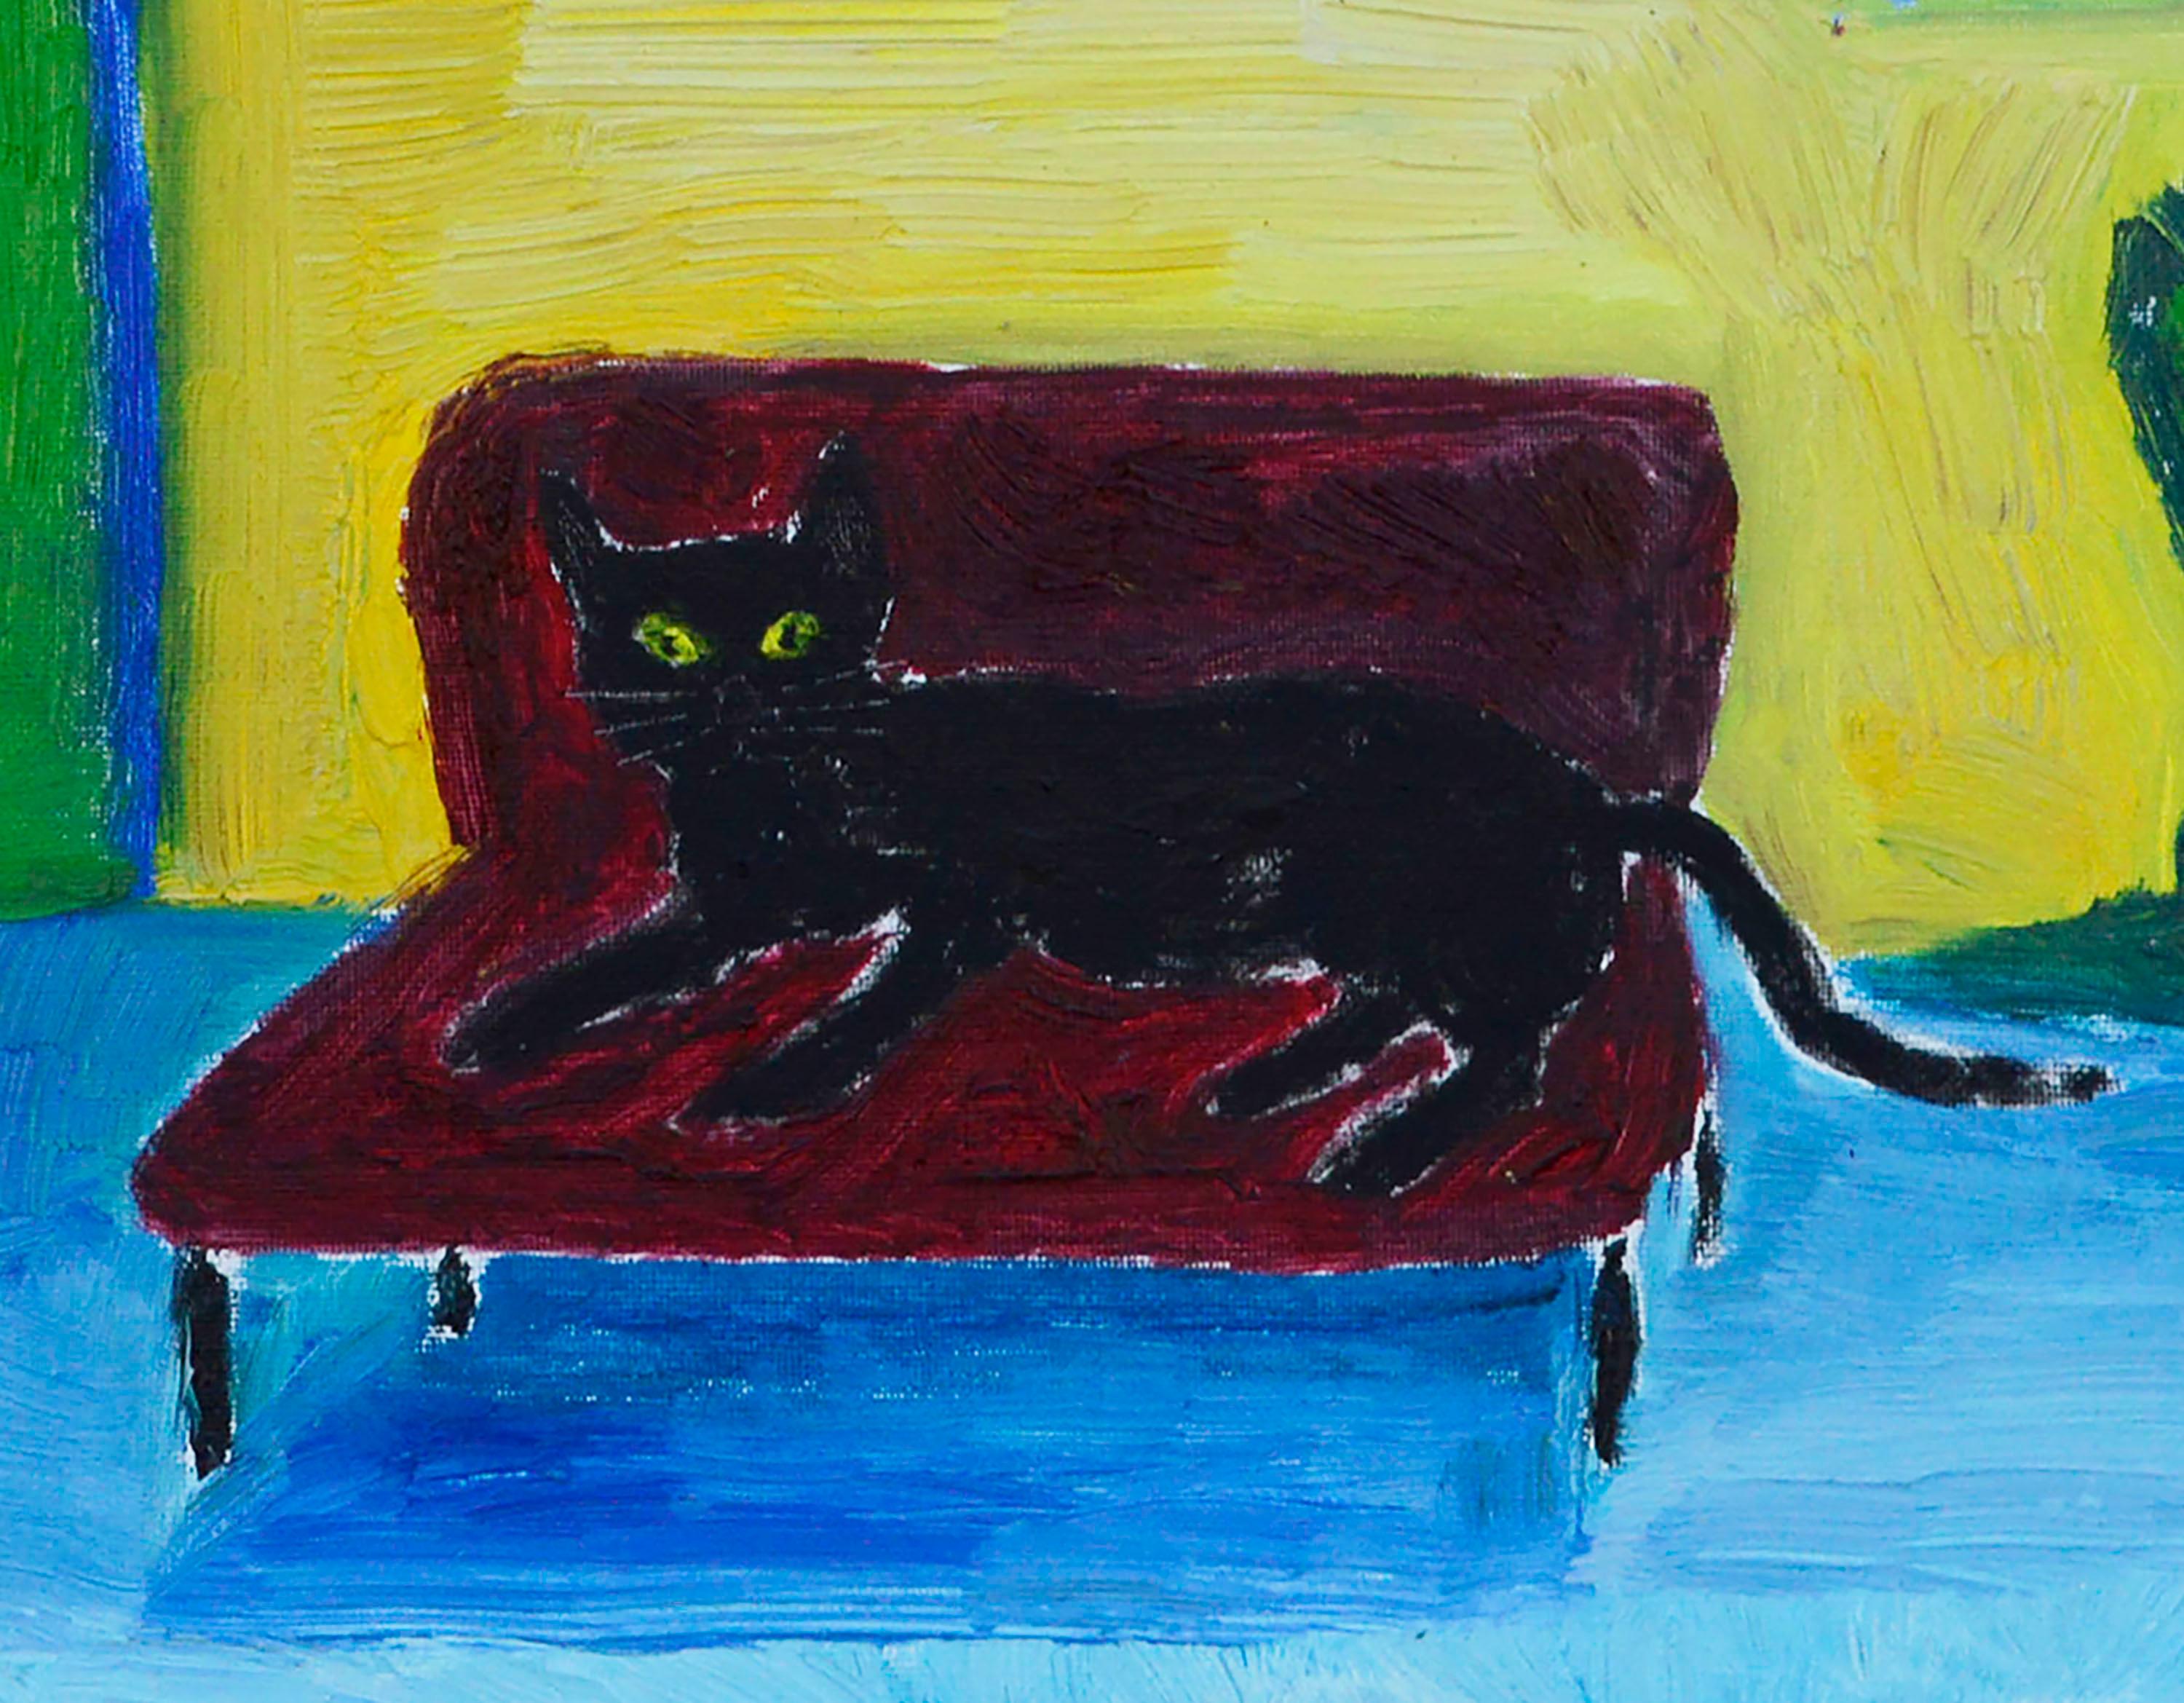 Rote Couch, schwarze Katze - Contemporary Fauvist Interior Scene in Primärfarben (Fauvismus), Painting, von Jonathan Taylor